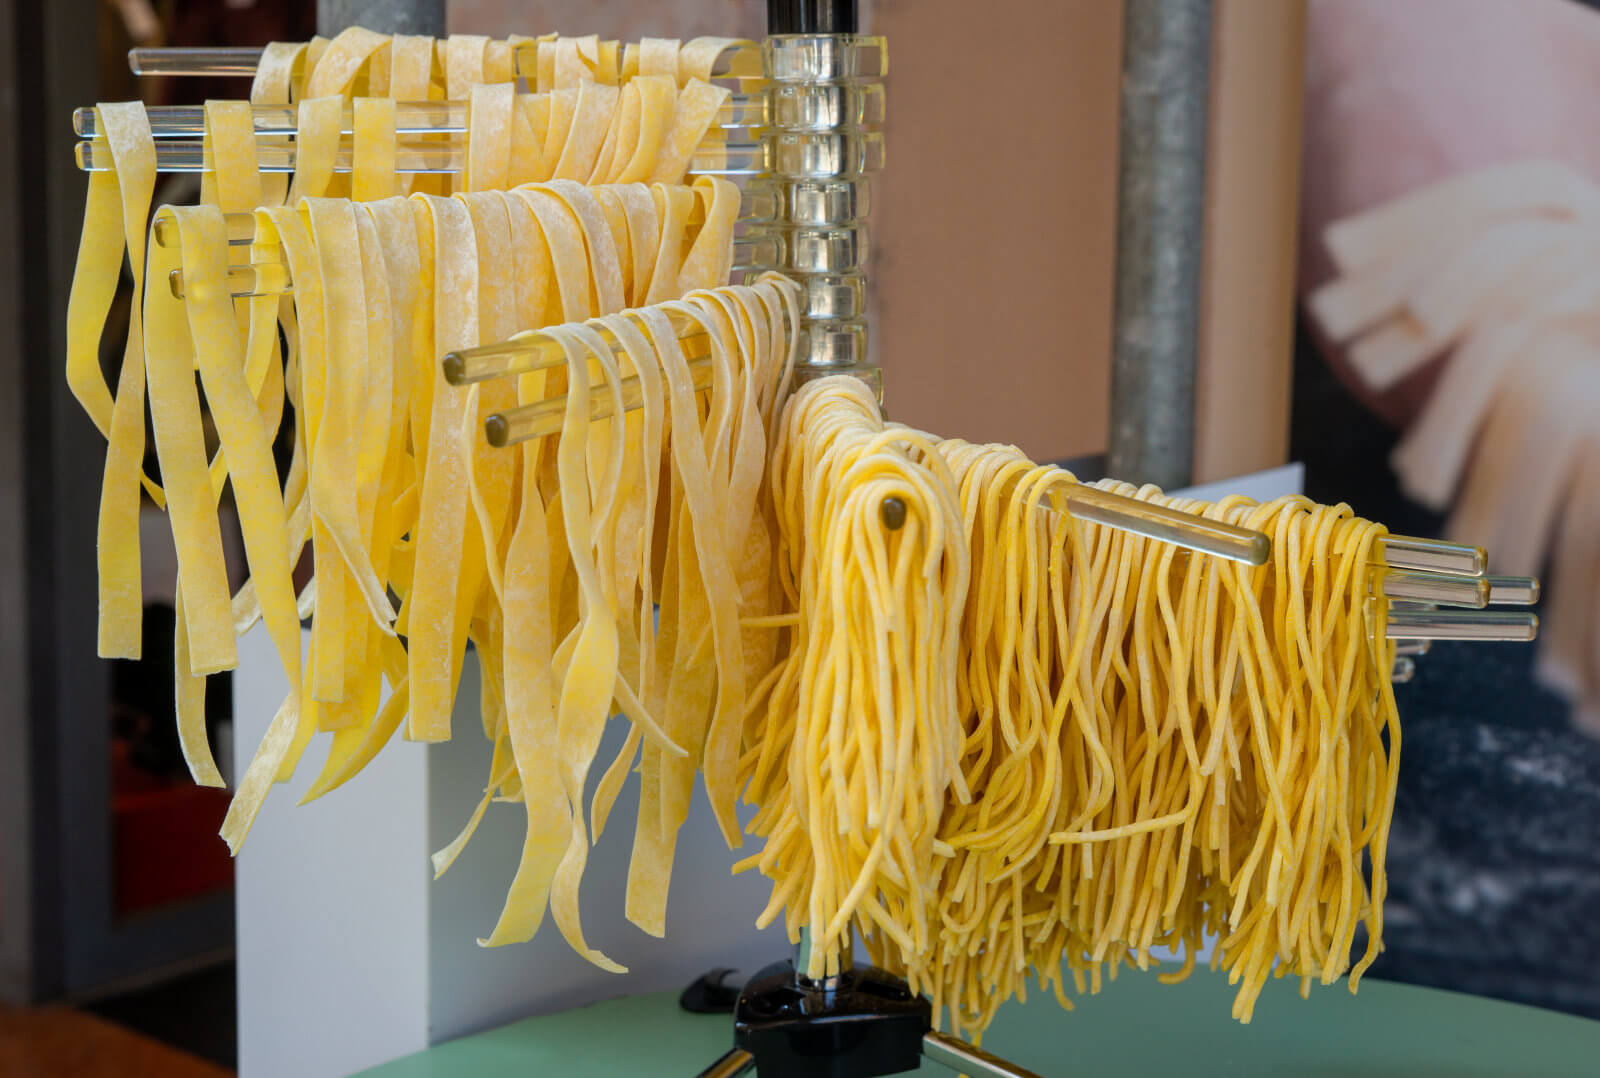 Fresh Noodle Production Line